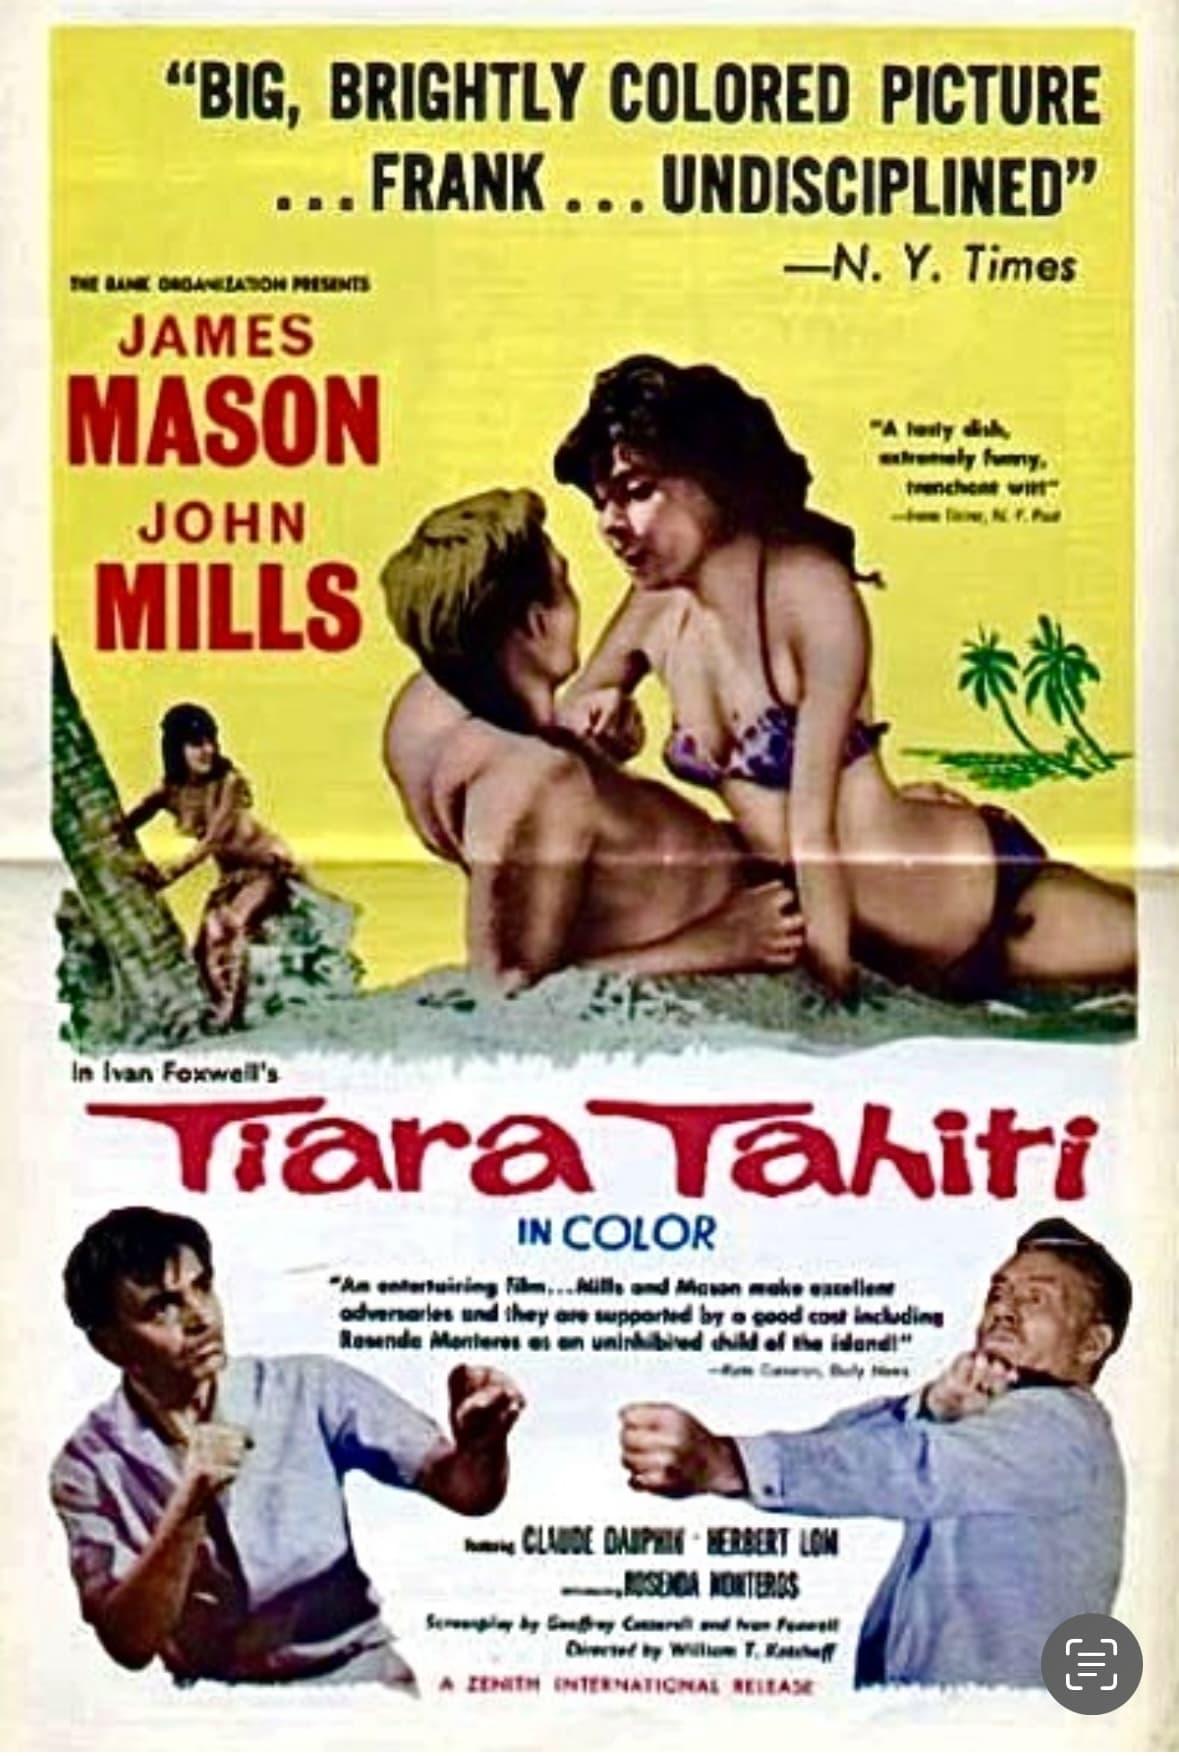 Tiara Tahiti poster